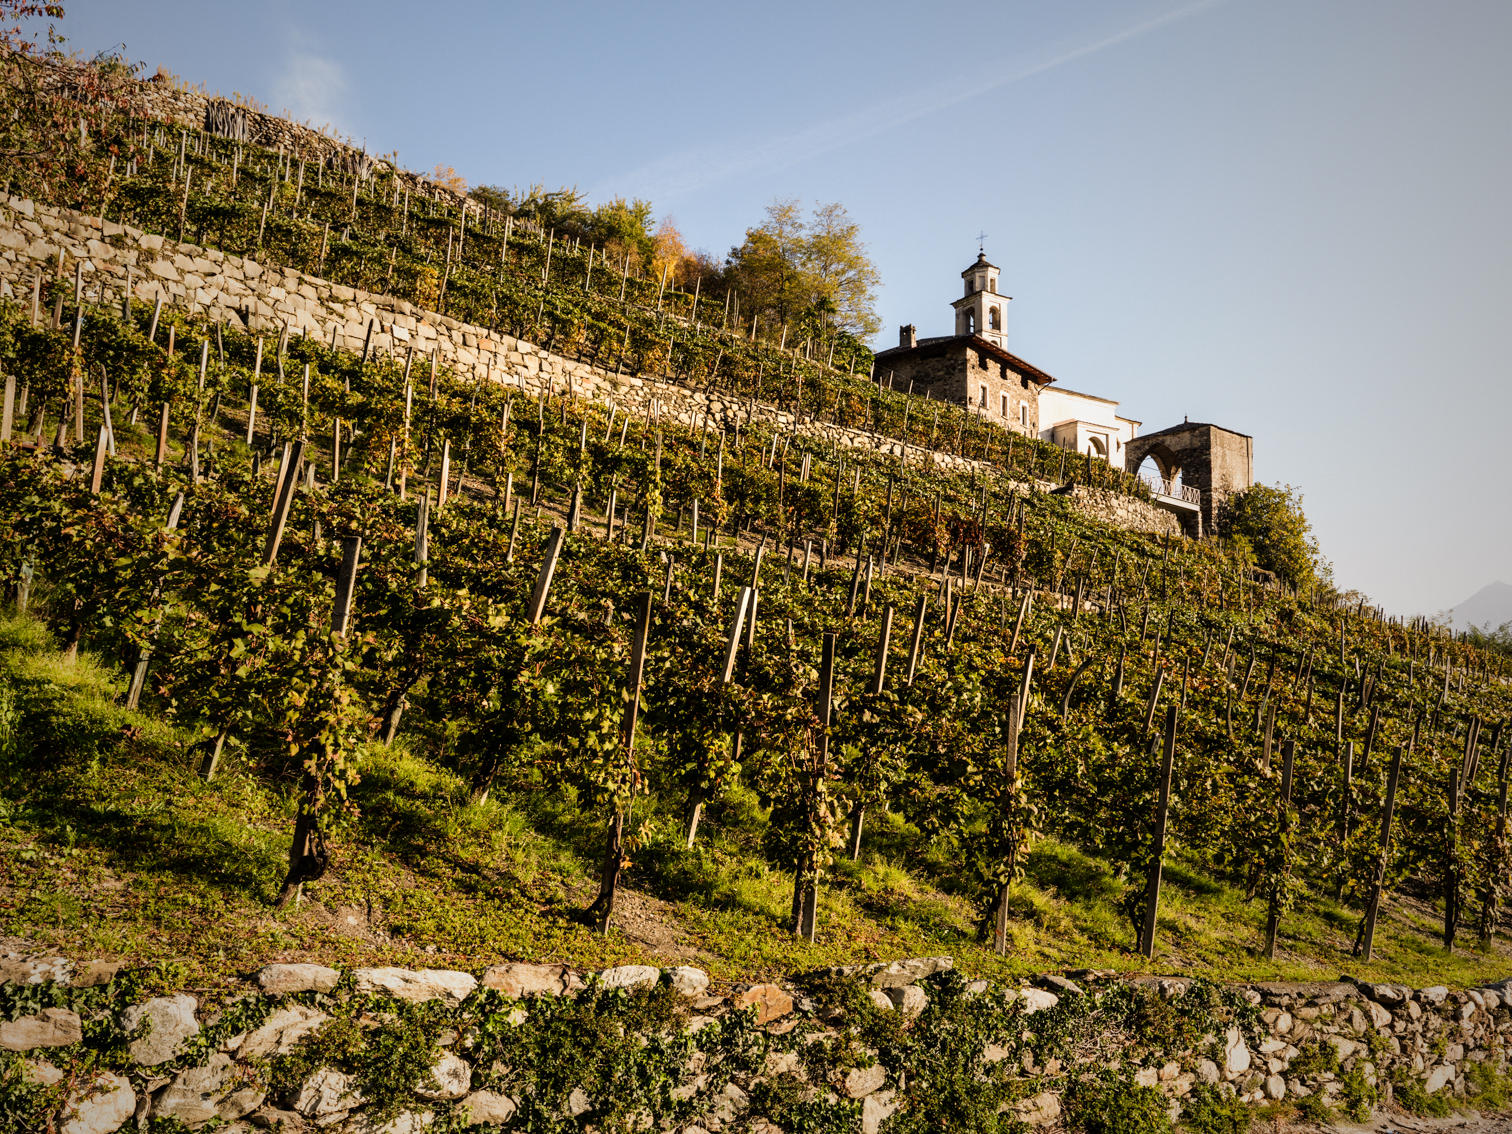 Valtellina Wine Road